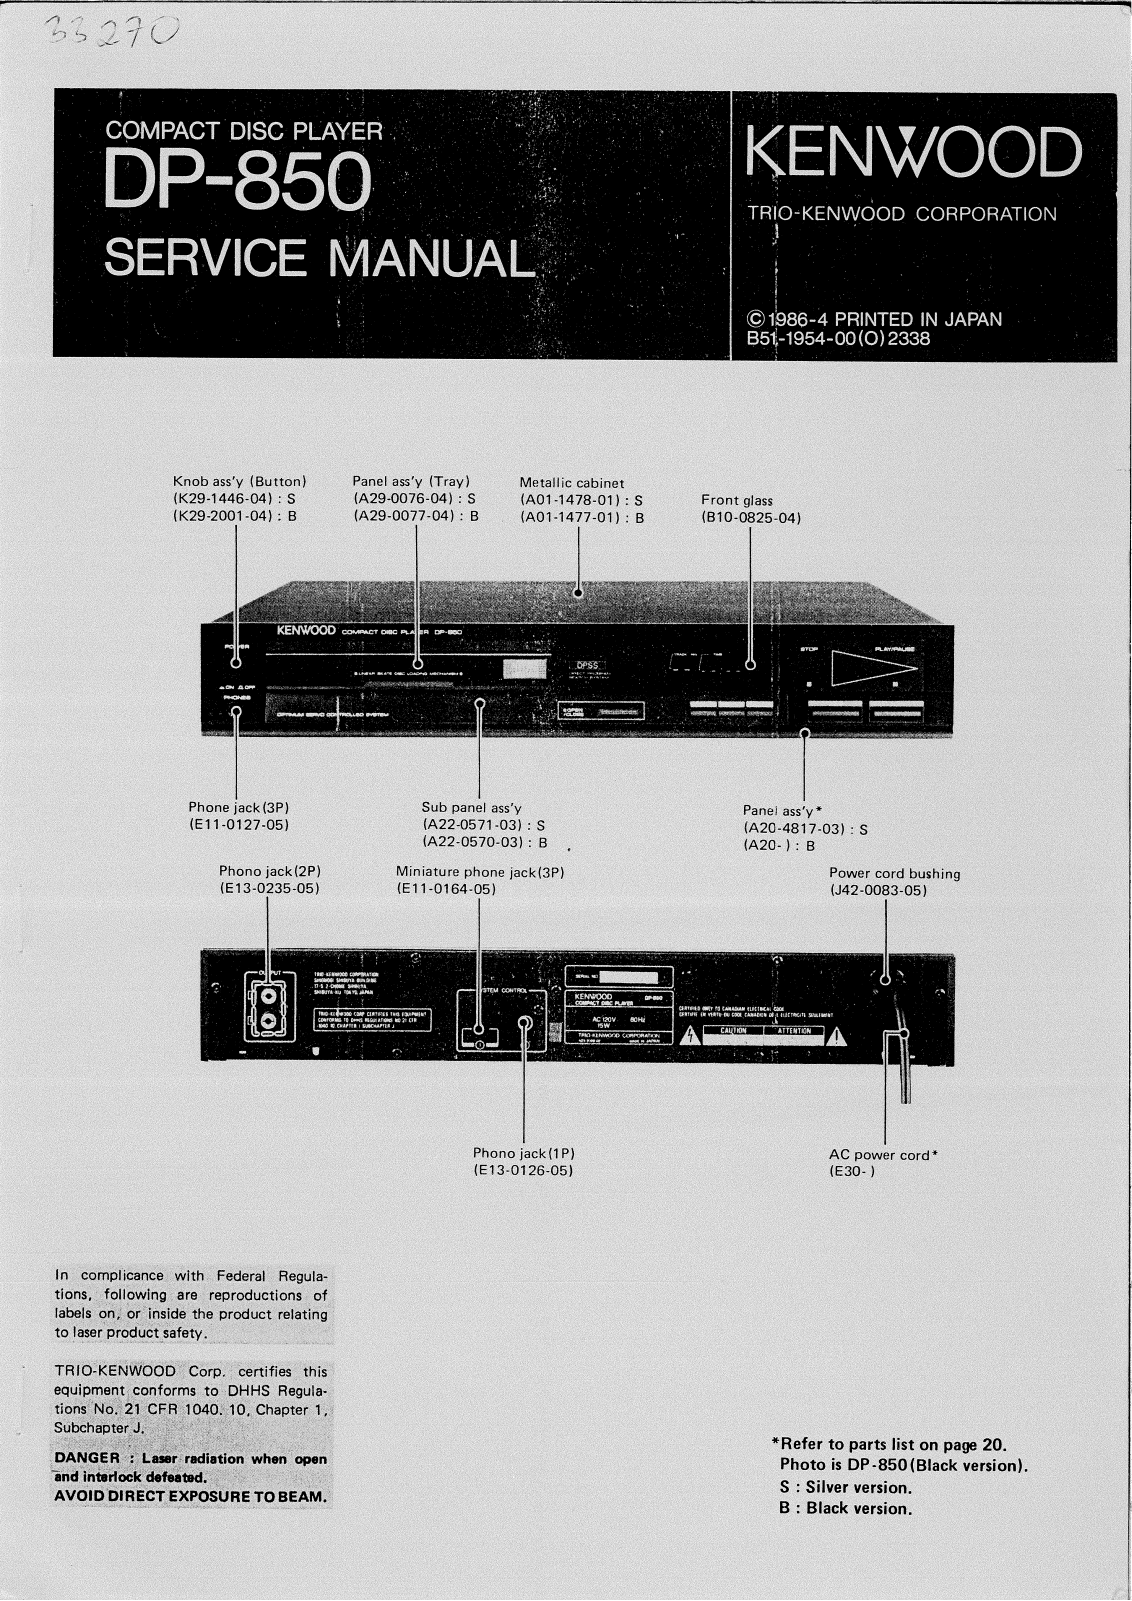 Kenwood DP-850 Service Manual